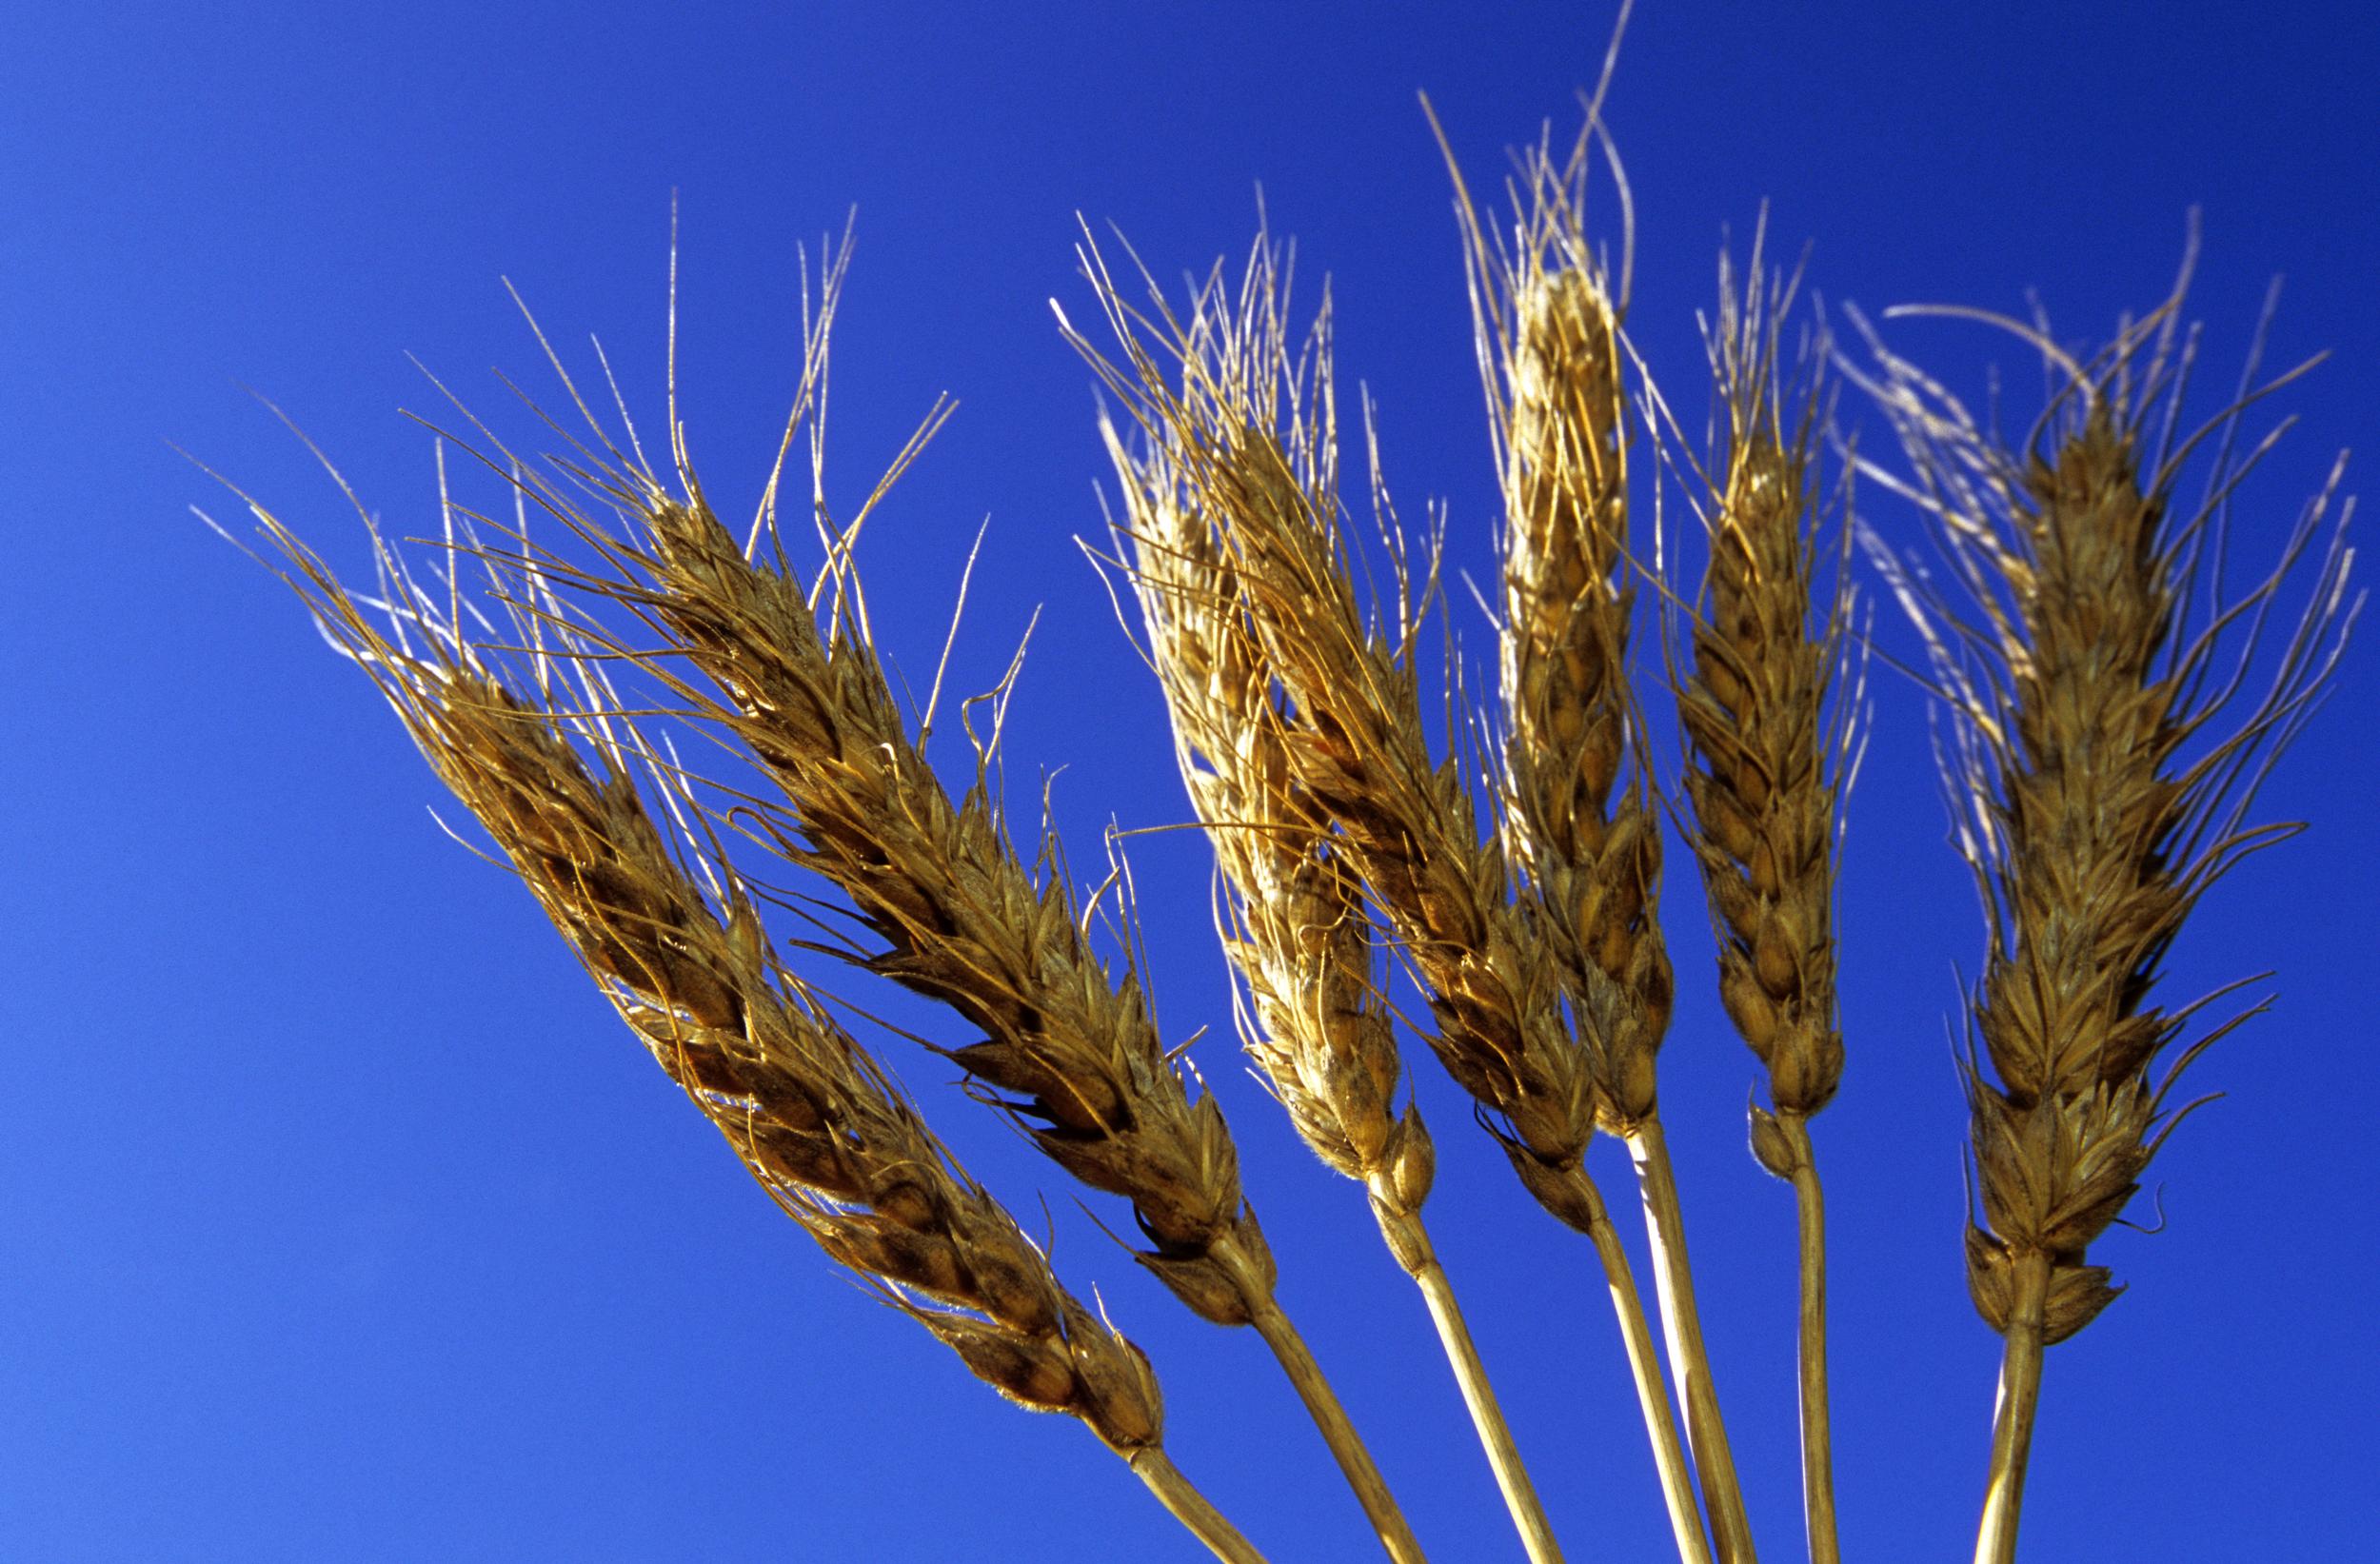 Le blé, aussi populaire que toxique - Greenpeace France